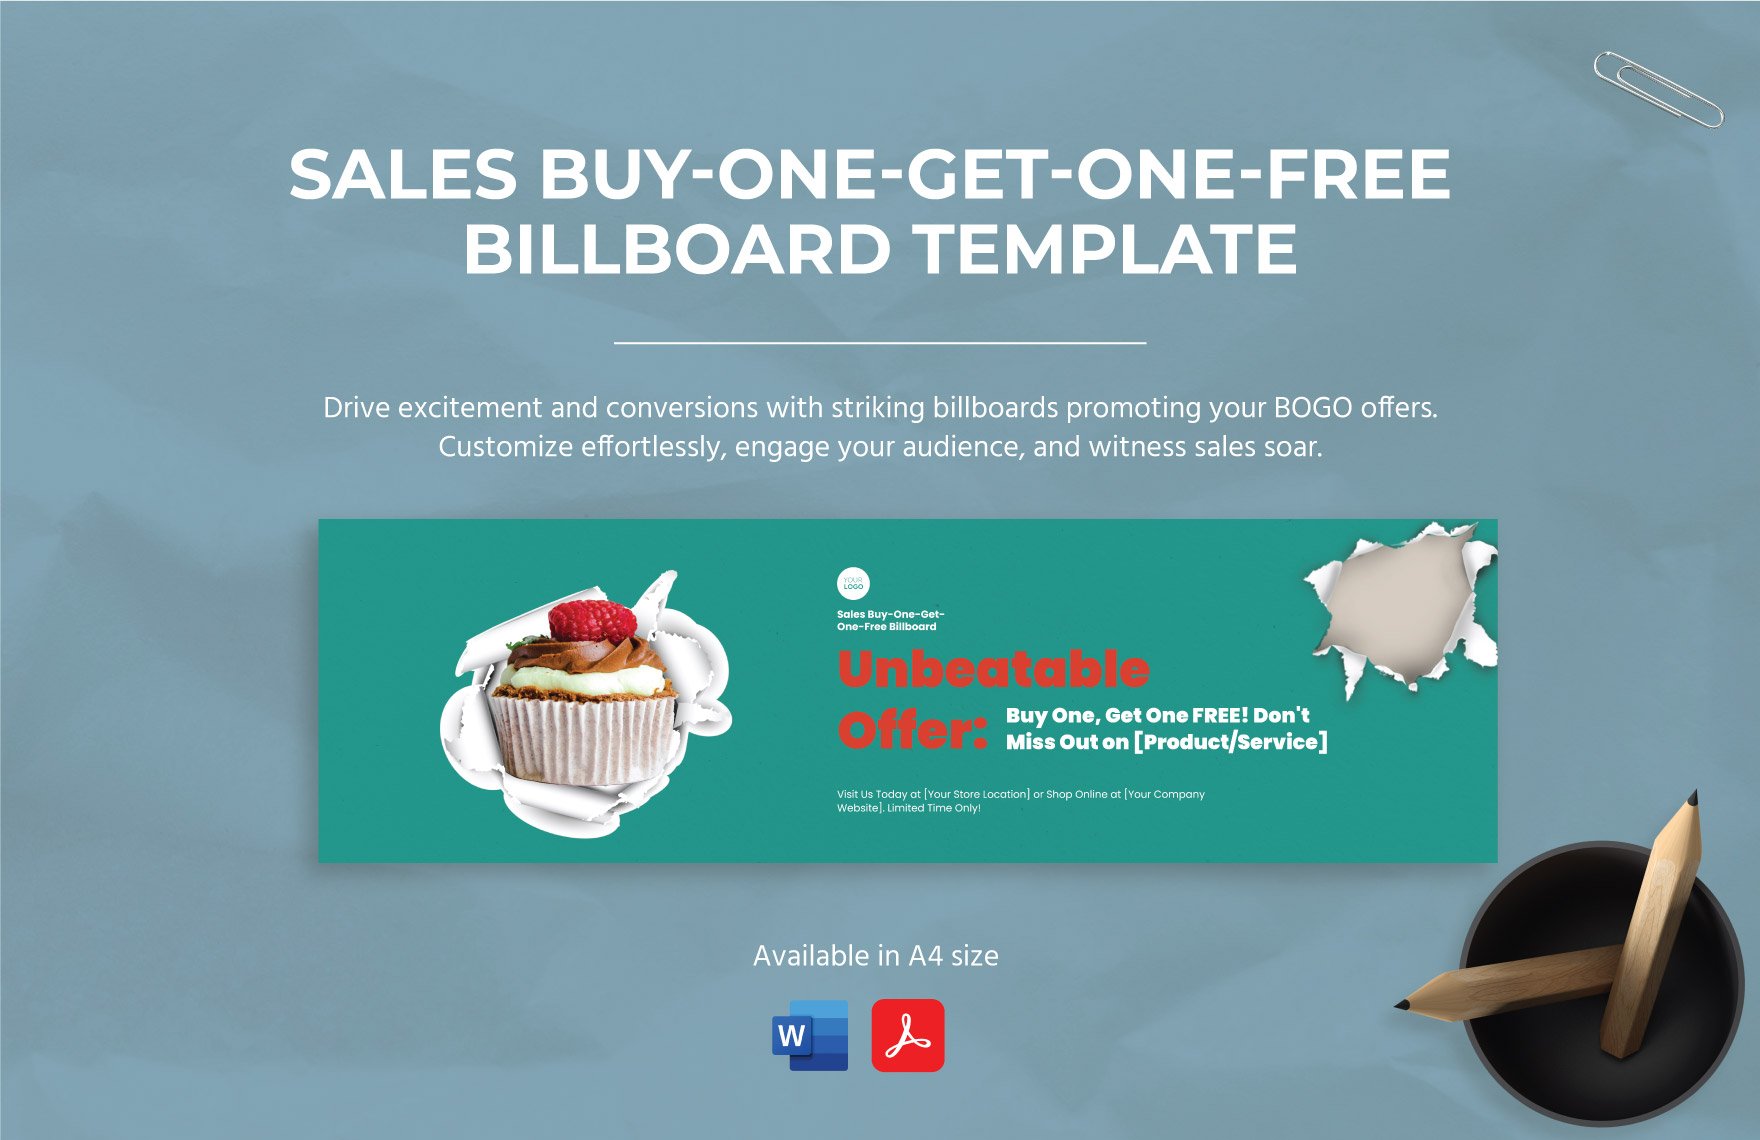 Sales Buy-One-Get-One-Free Billboard Template